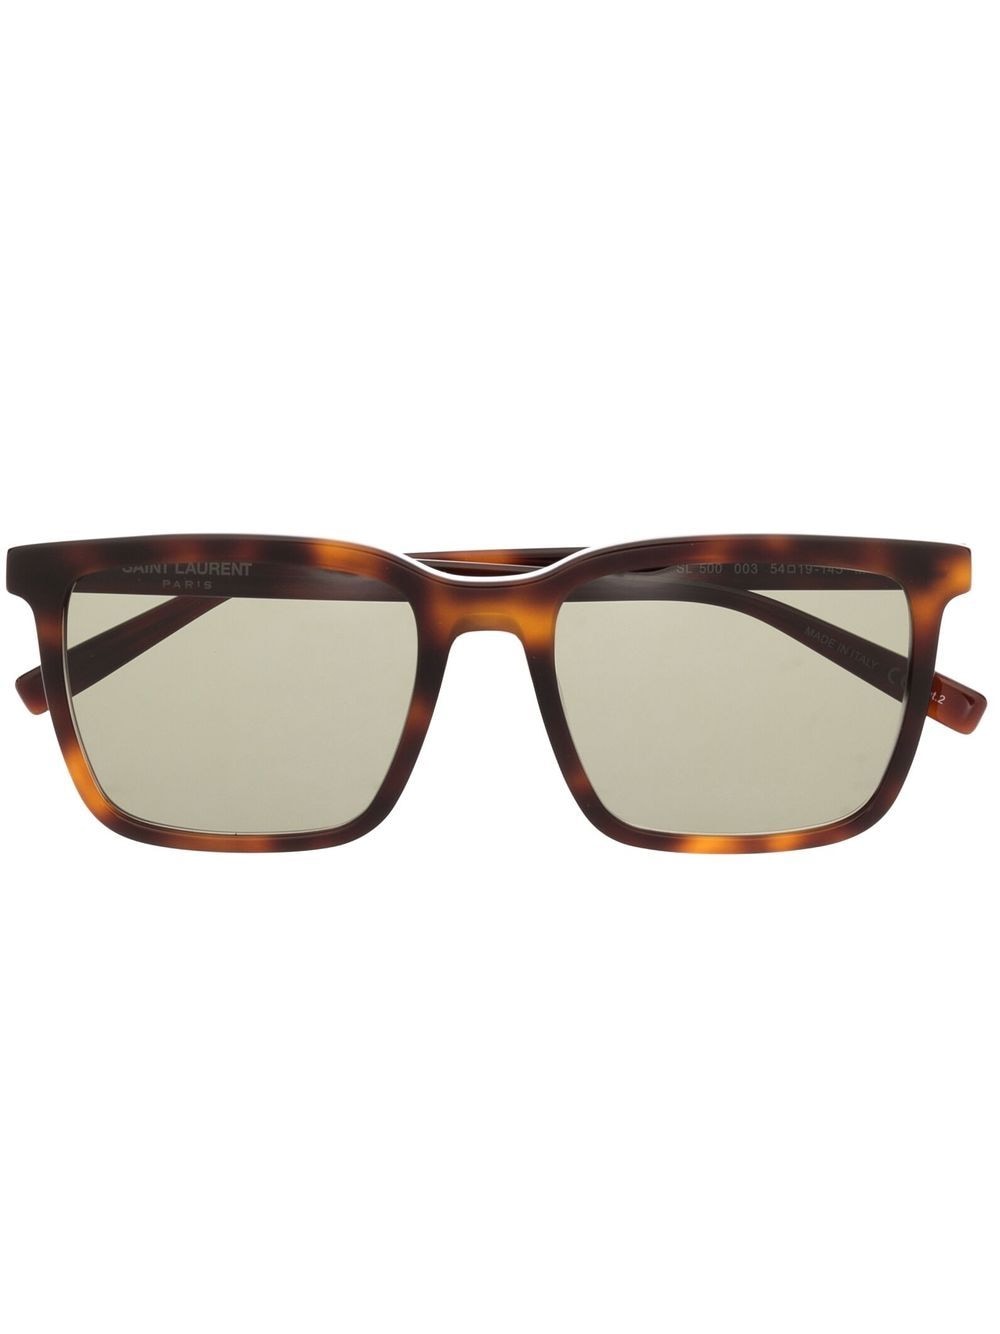 Saint Laurent Tortoise-shell Square-frame Sunglasses In Brown